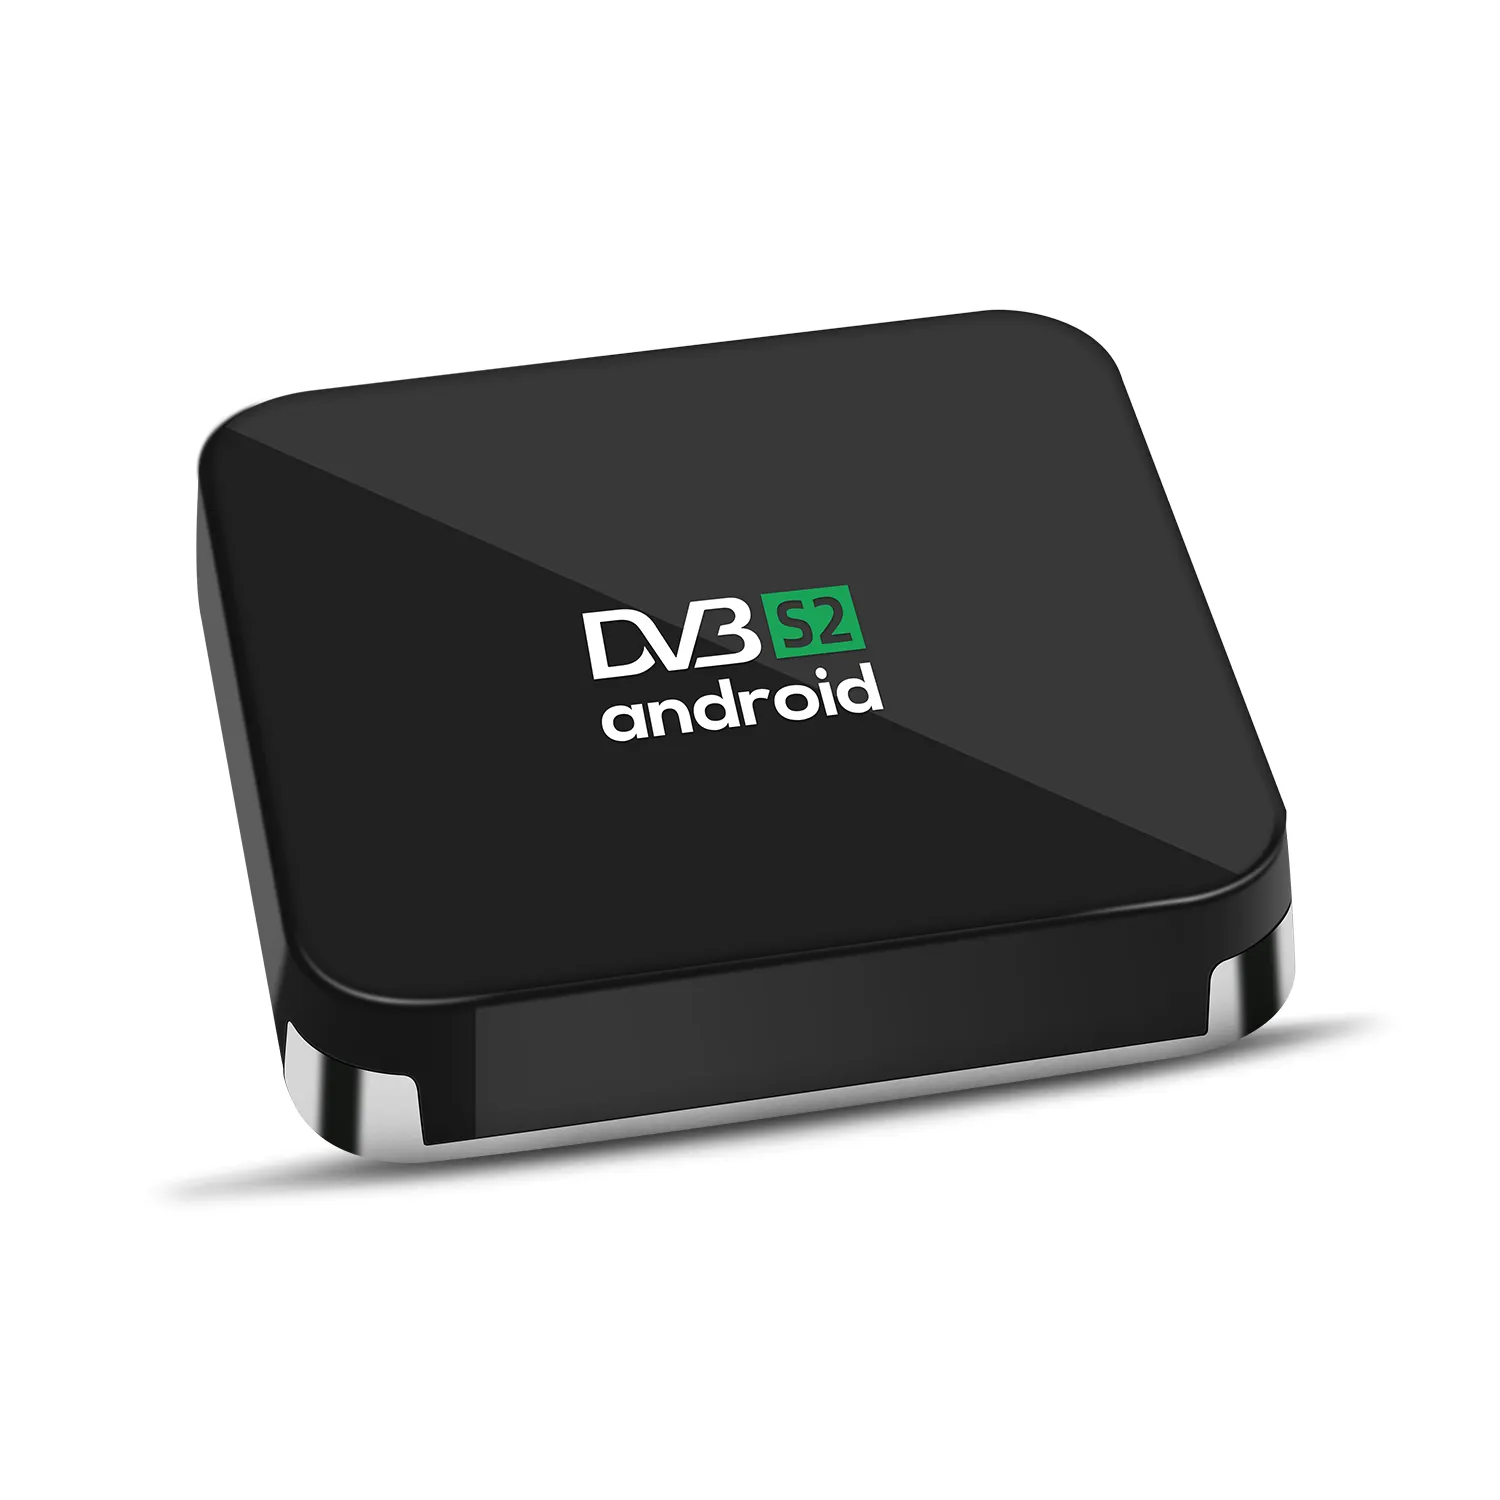 सबसे अच्छा गुणवत्ता ott उपग्रह टीवी रिसीवर 4K एंड्रॉयड और DVB S2 एफटीए स्मार्ट एंड्रॉयड टीवी बॉक्स